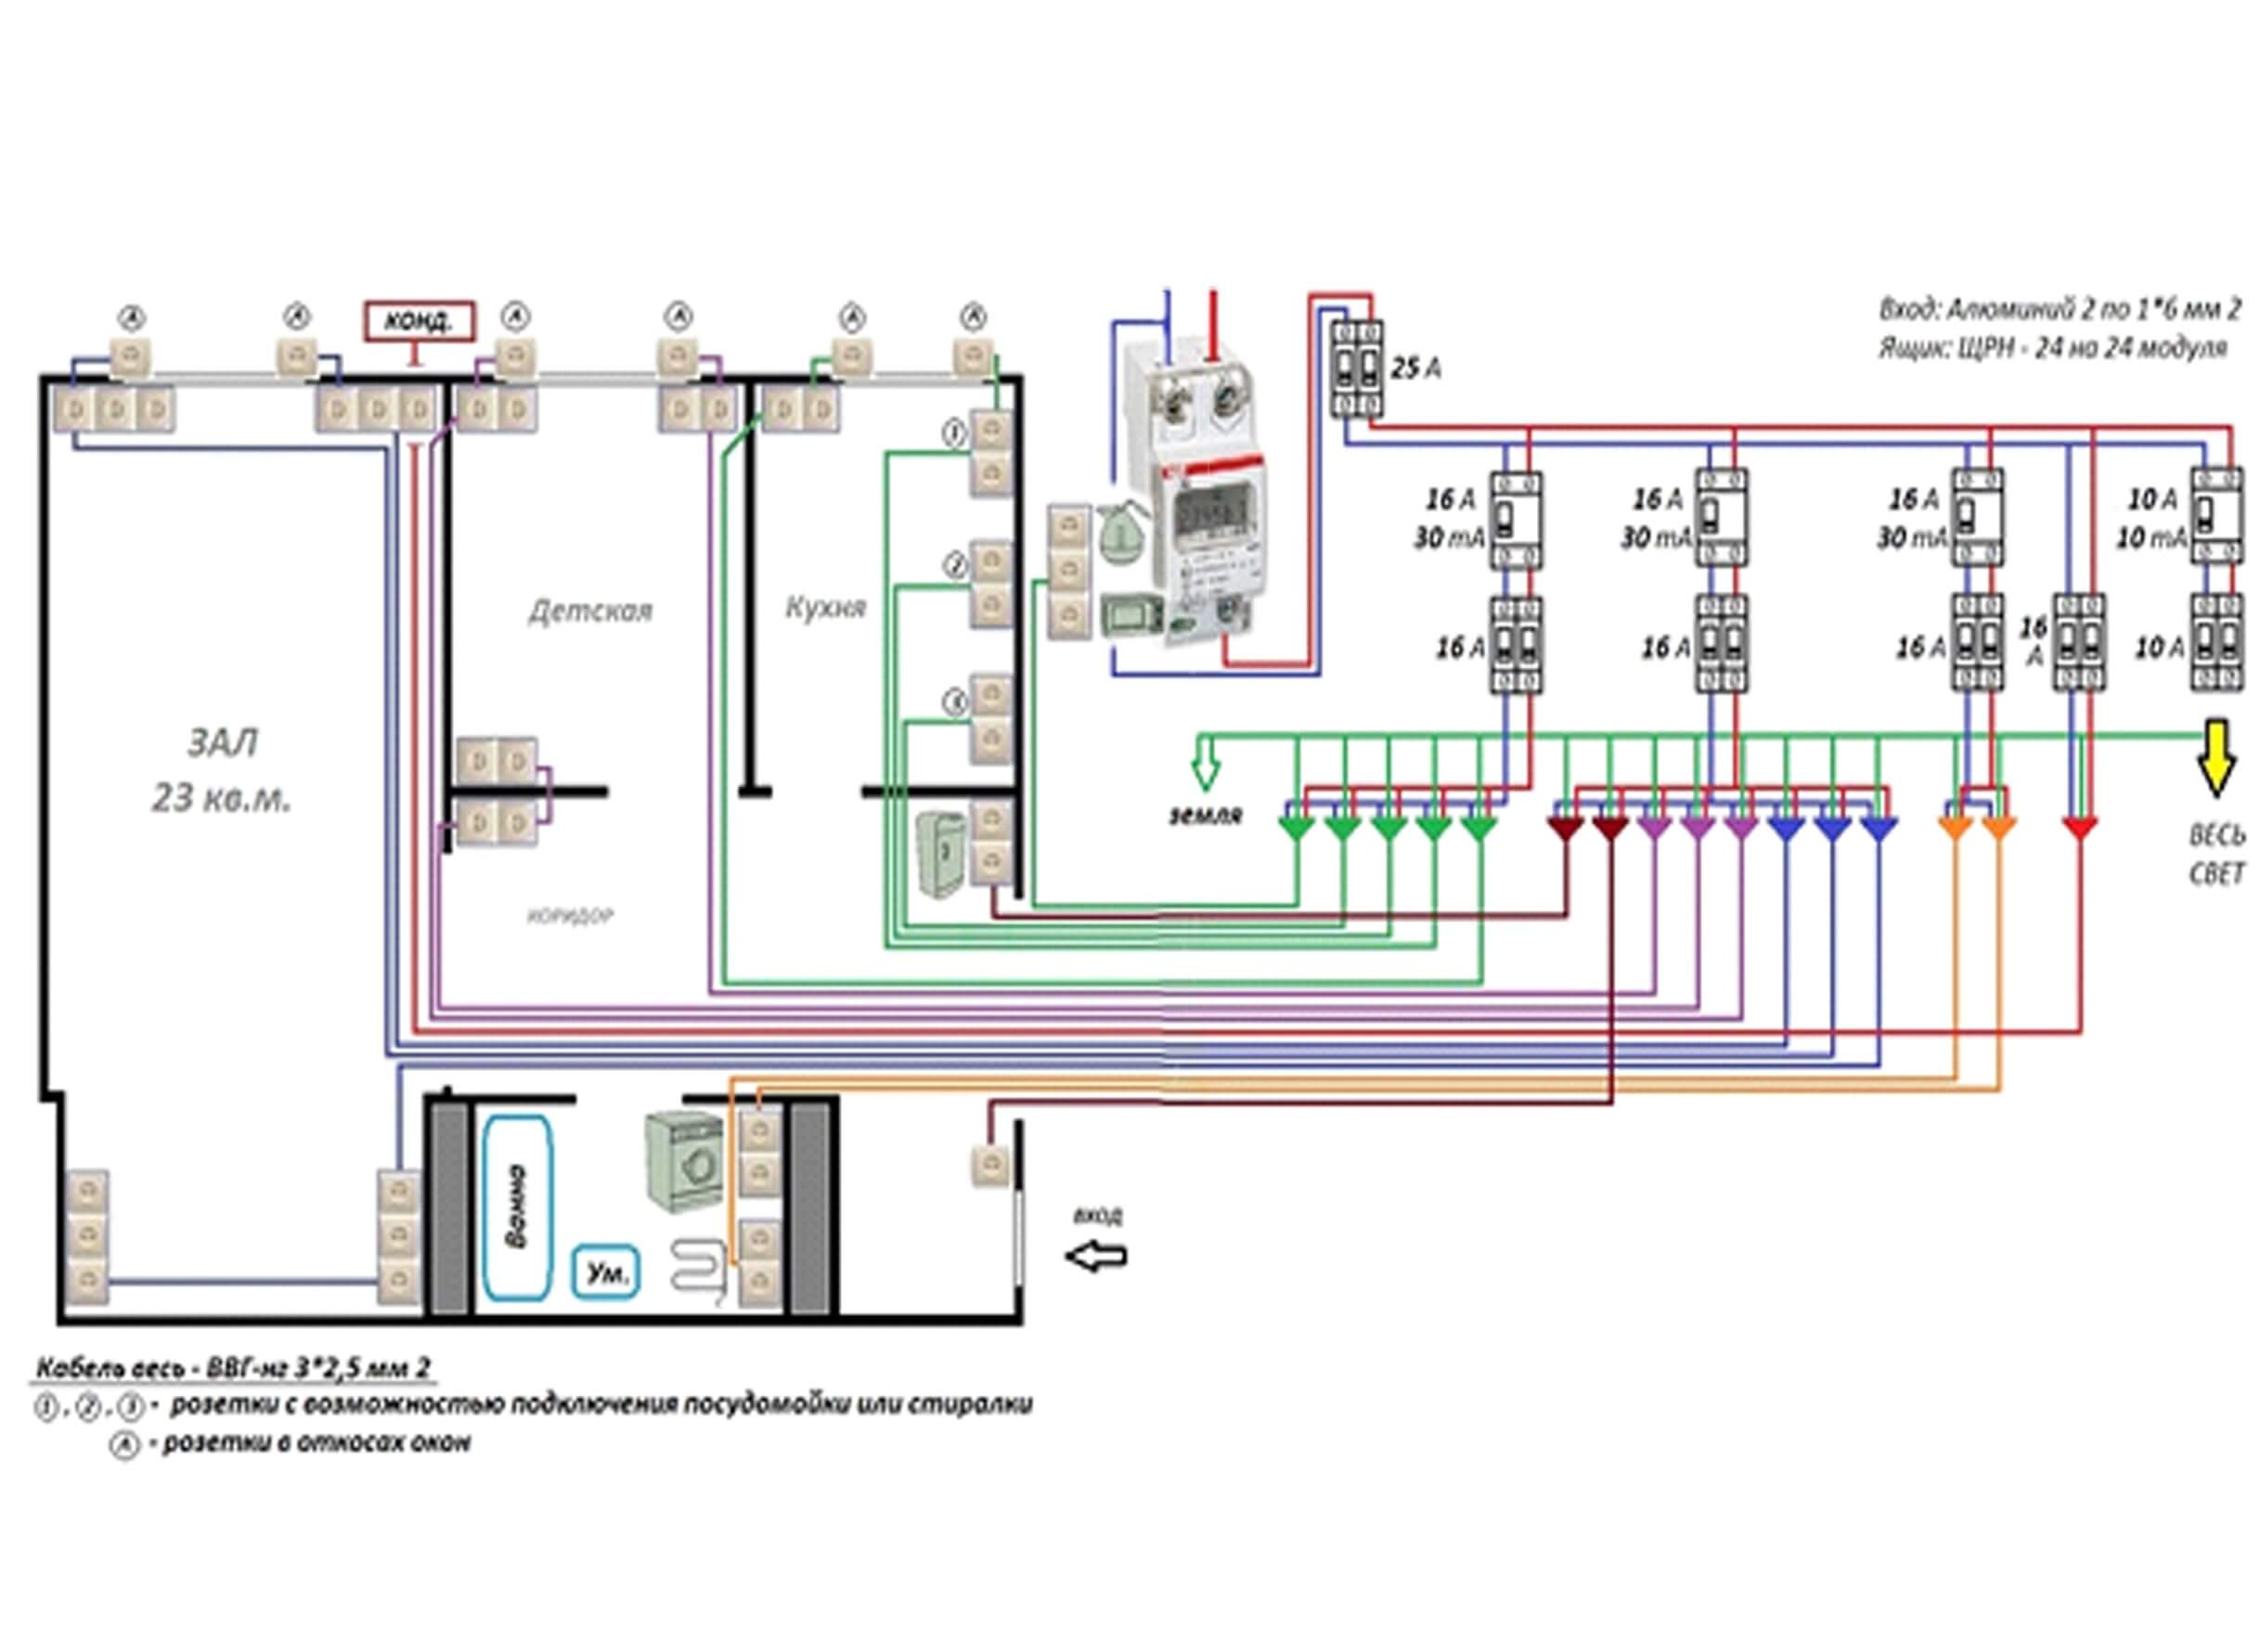 Какой кабель нужен для подключения дома к электросети на 15 квт и как его подсоединять